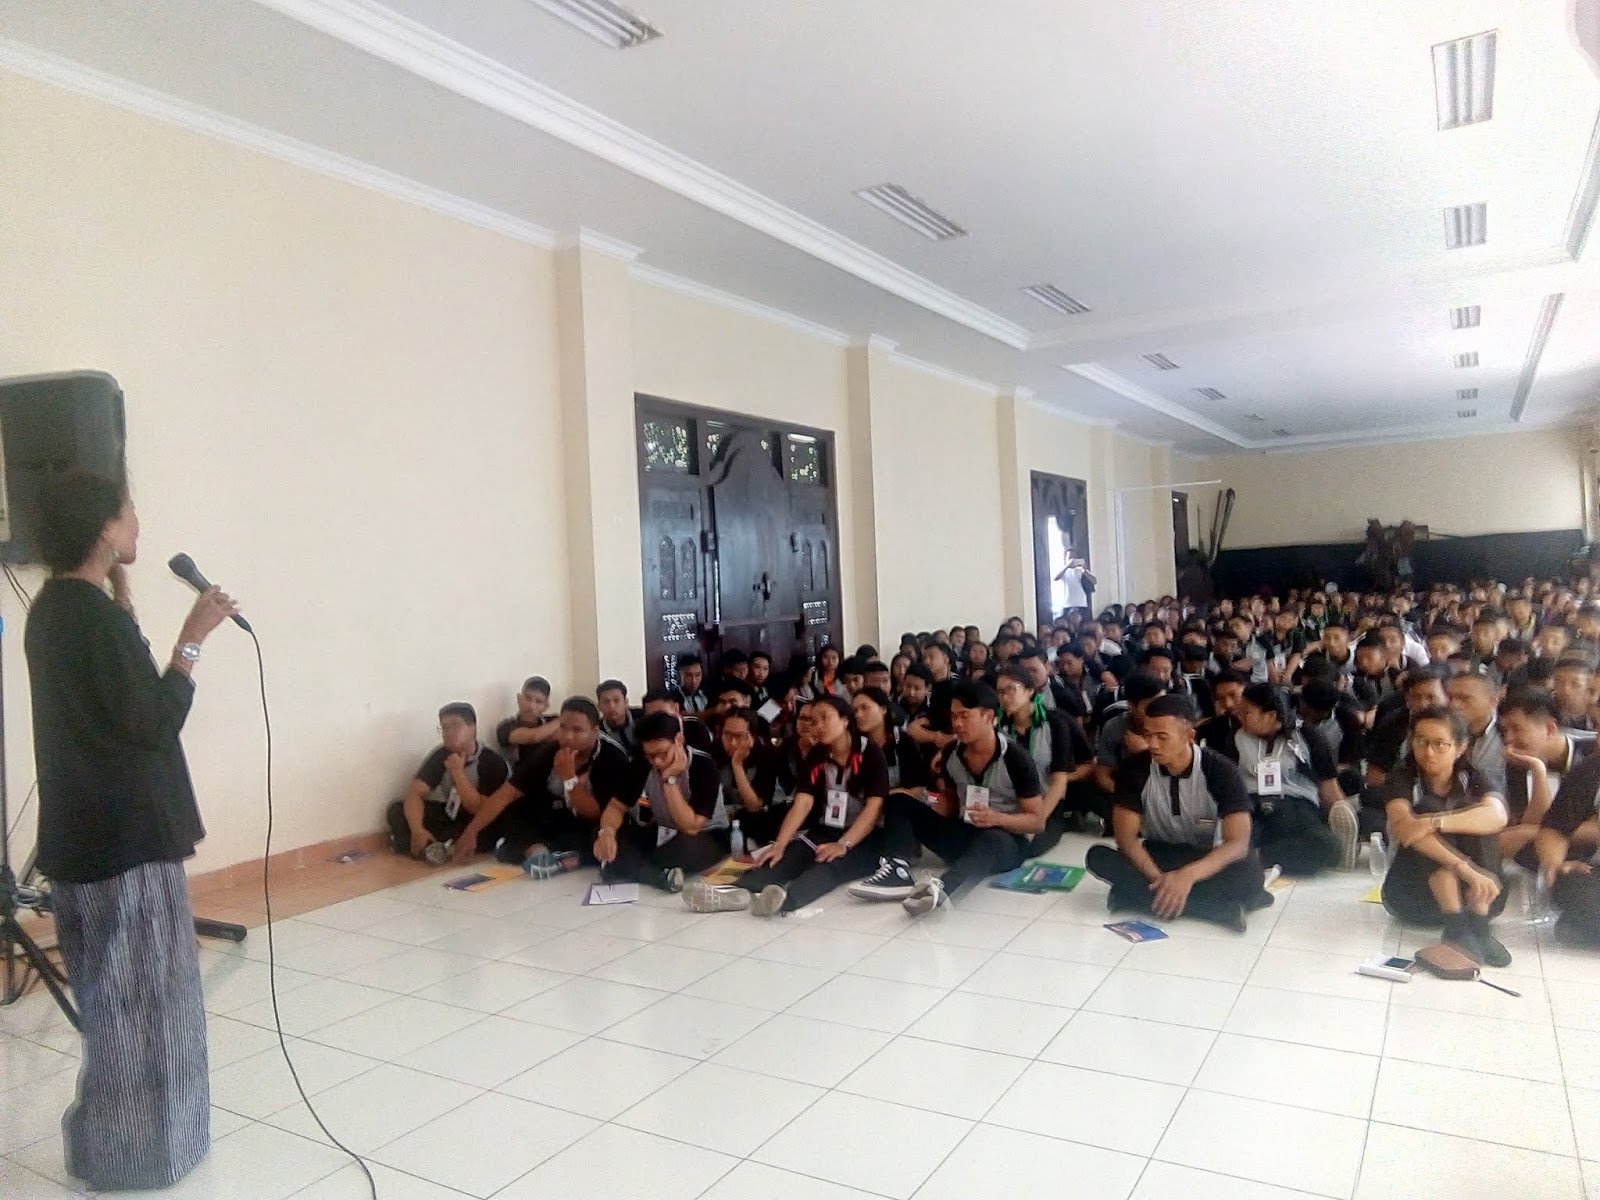 Setelah ceramah acara dilanjutkan dengan temu kangen antara Alumni dan Direktur Akpar Denpasar bertempat di ruang dosen kampus Akpar Denpasar